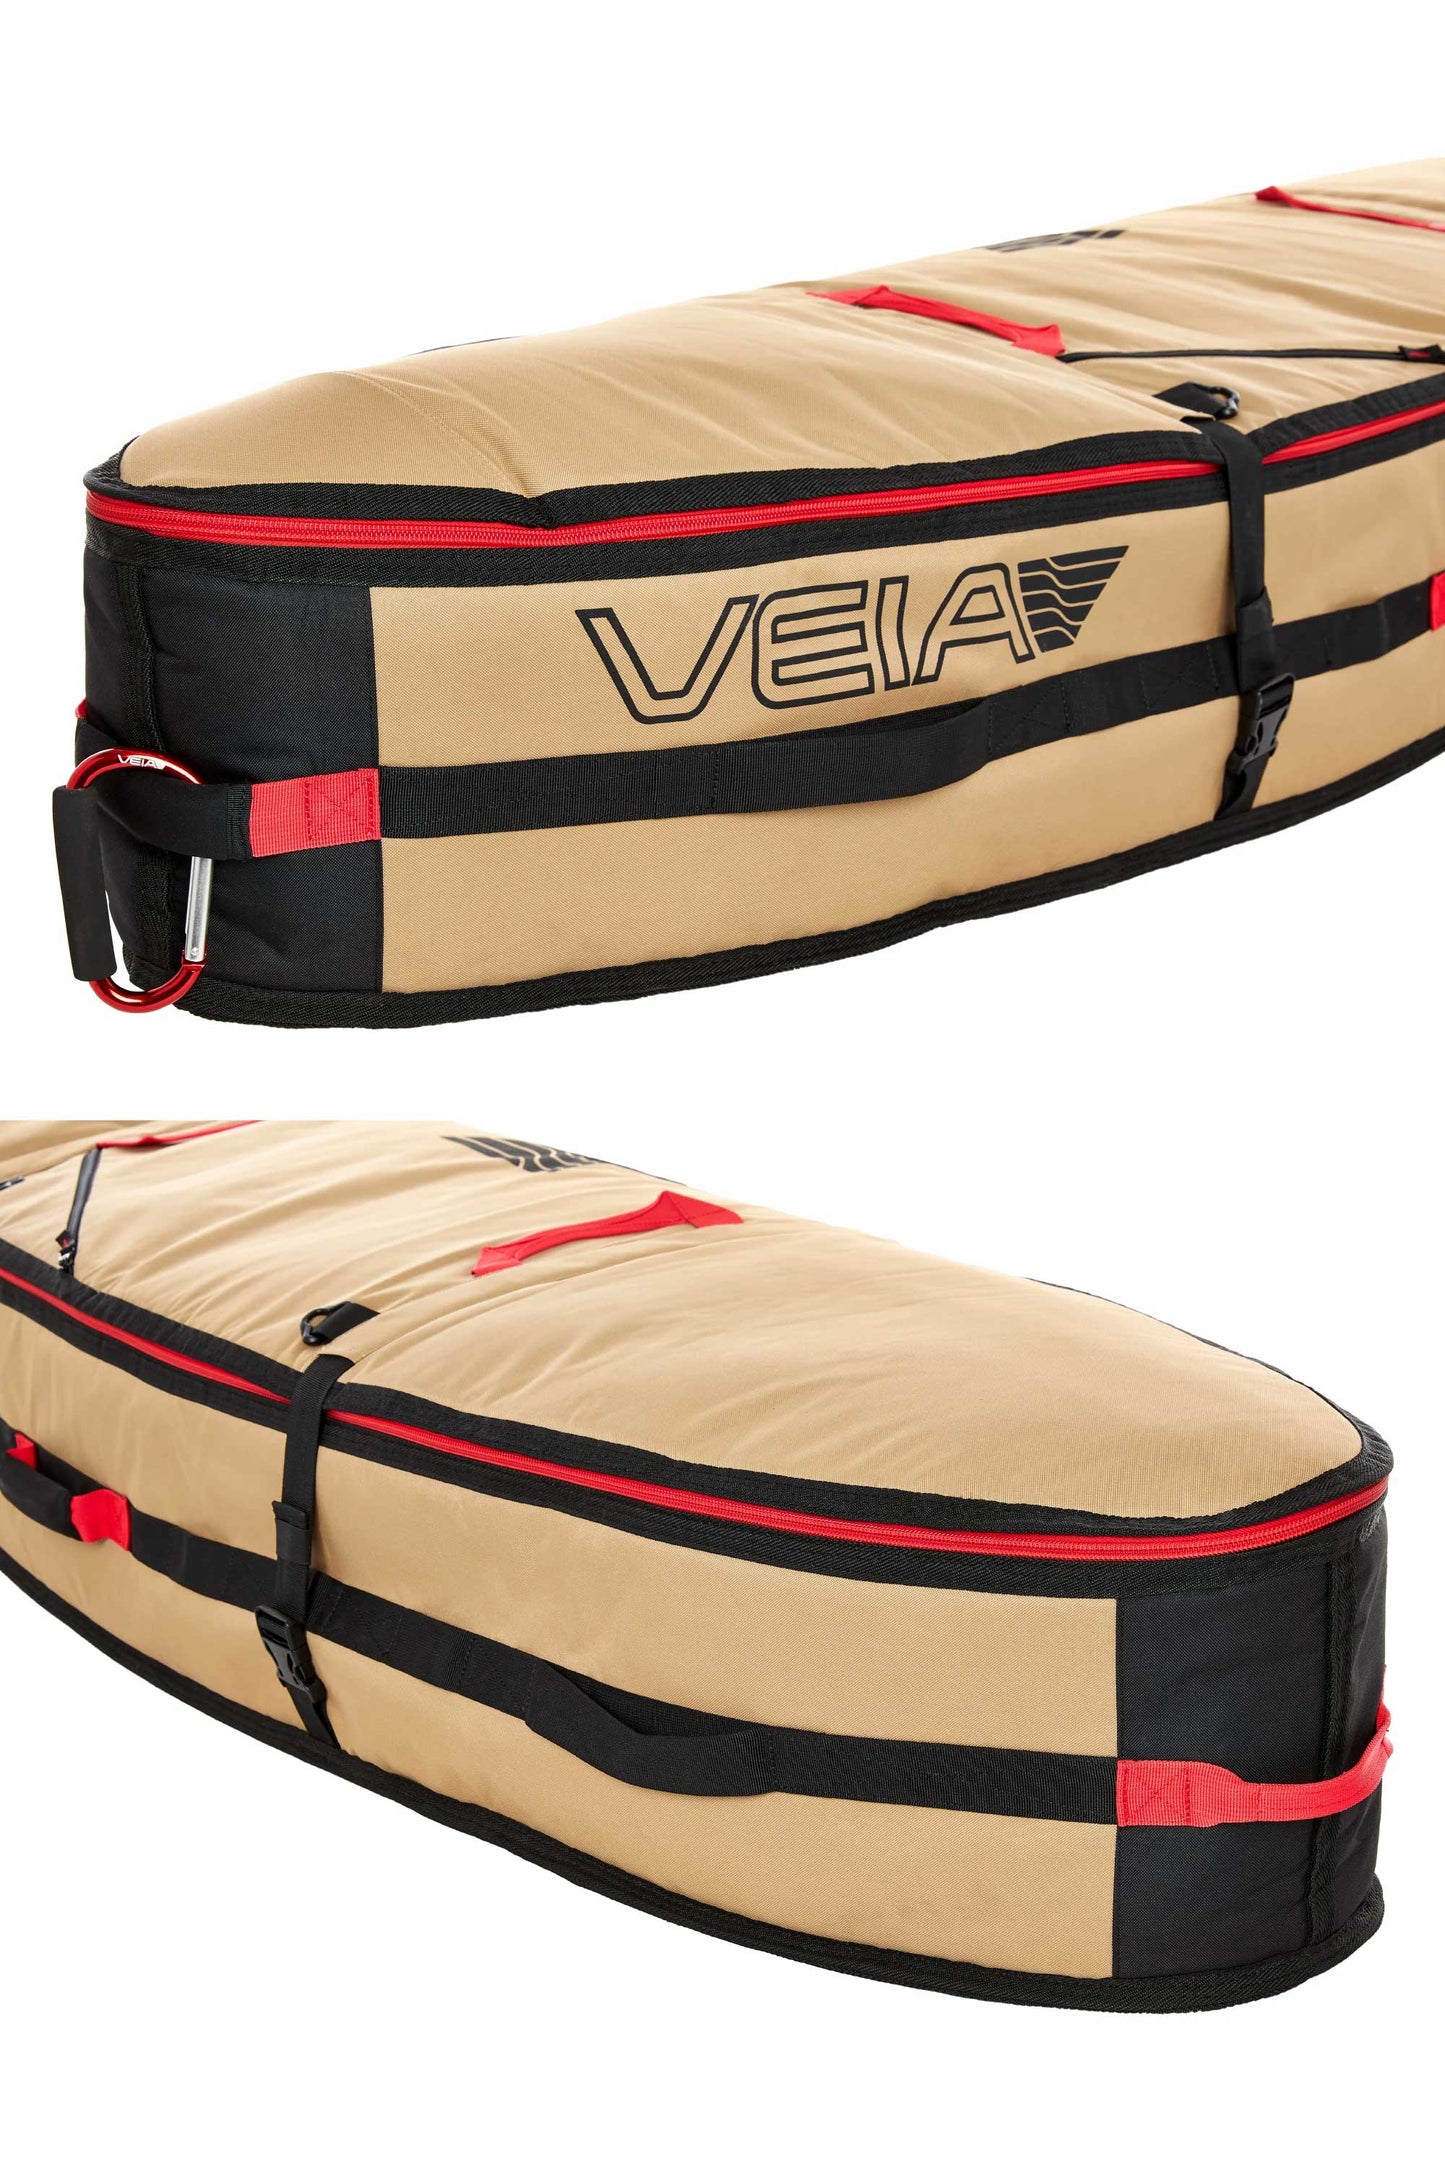 
                  
                    Pukas-Surf-Shop-surfboardbag-john-john-florence-4-6-6-board-travel-bag-beige
                  
                